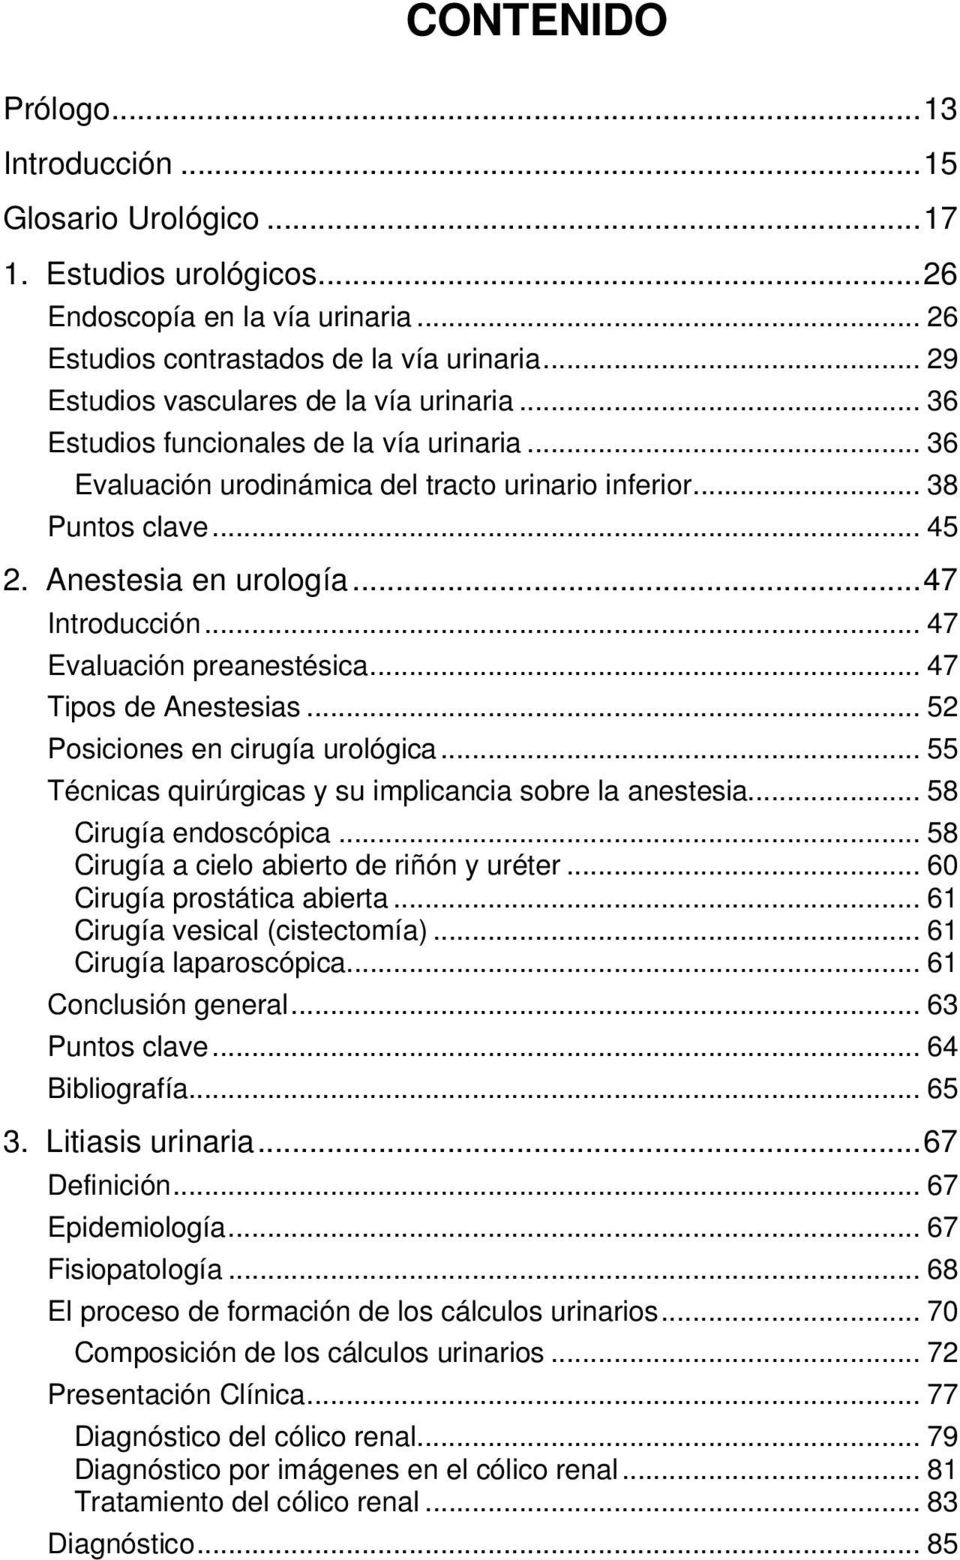 .. 47 Introducción... 47 Evaluación preanestésica... 47 Tipos de Anestesias... 52 Posiciones en cirugía urológica... 55 Técnicas quirúrgicas y su implicancia sobre la anestesia.